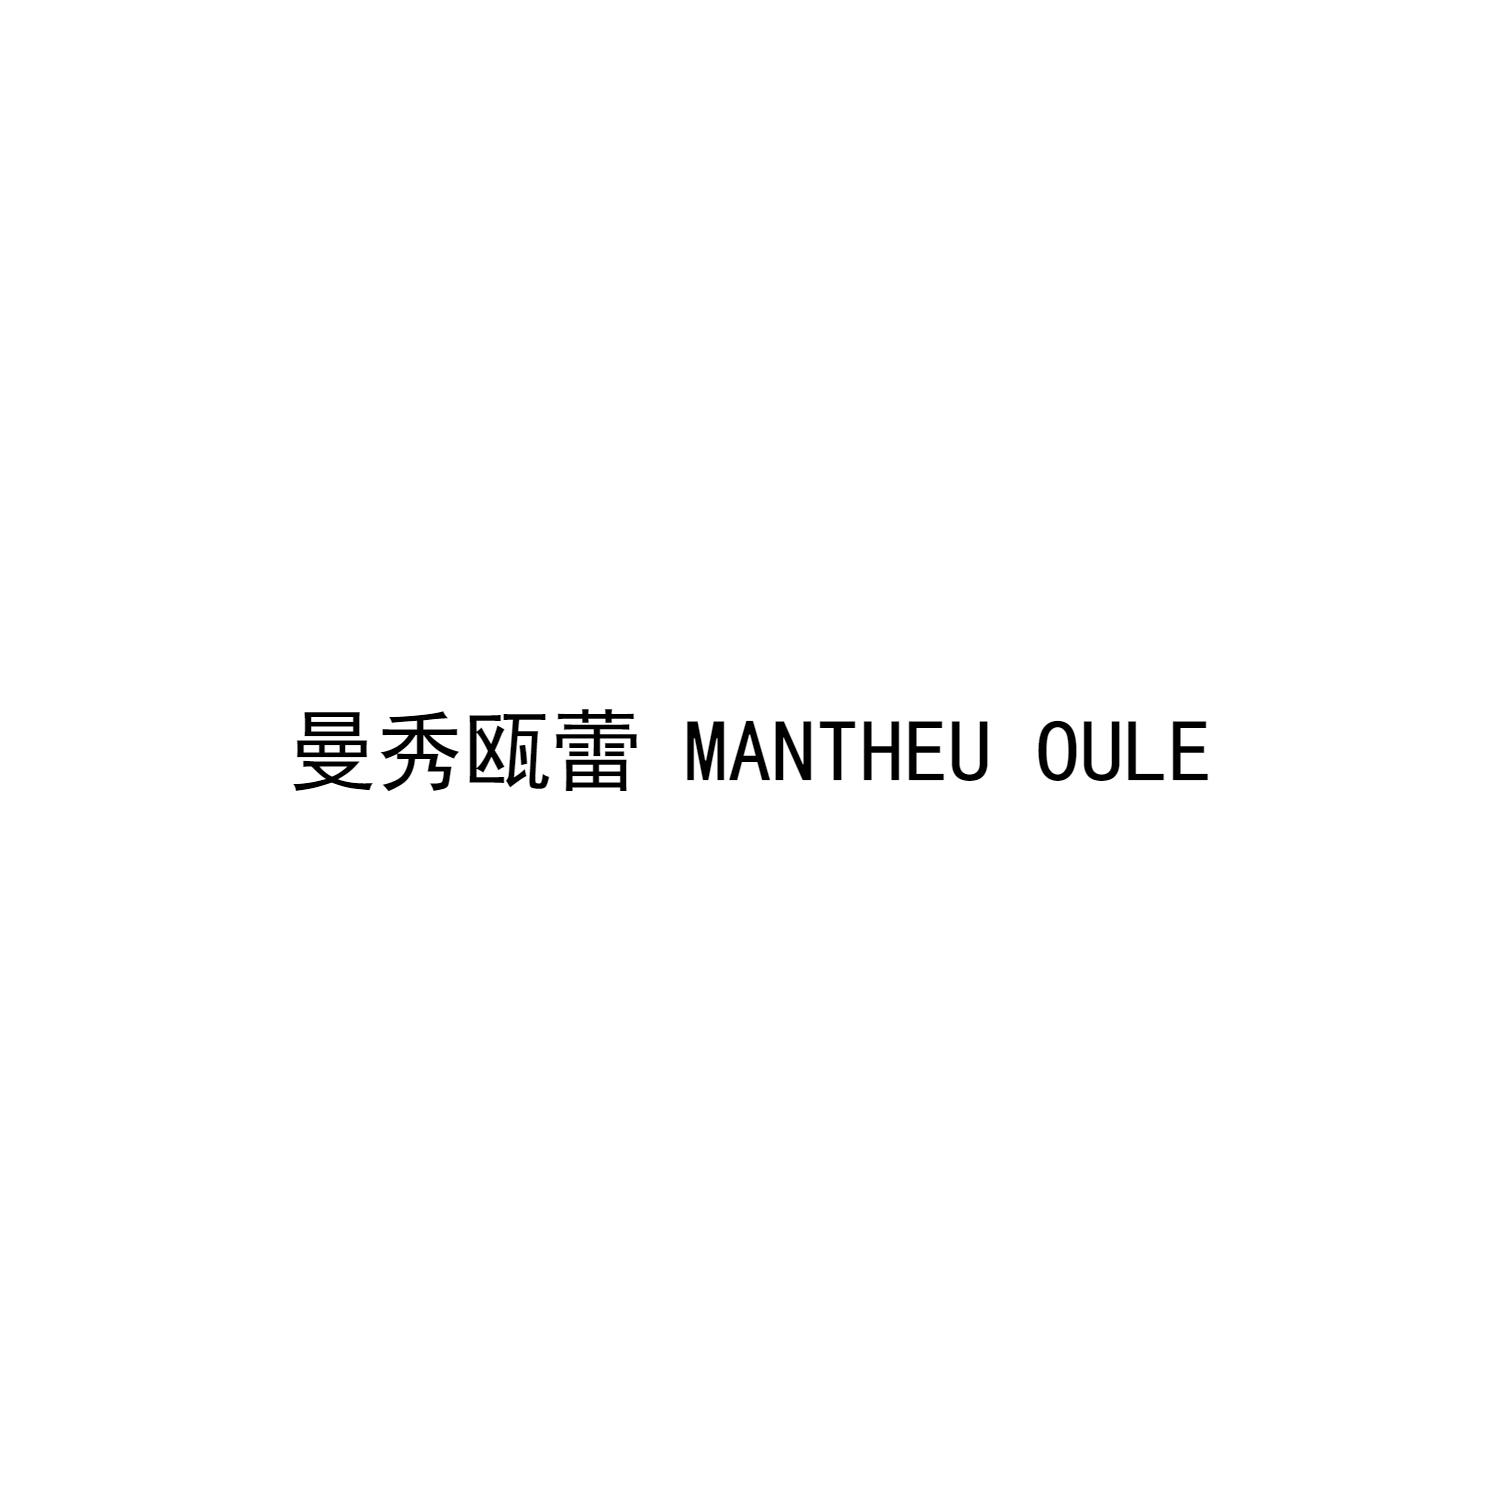 03类-日化用品曼秀瓯蕾 MANTHEU OULE商标转让